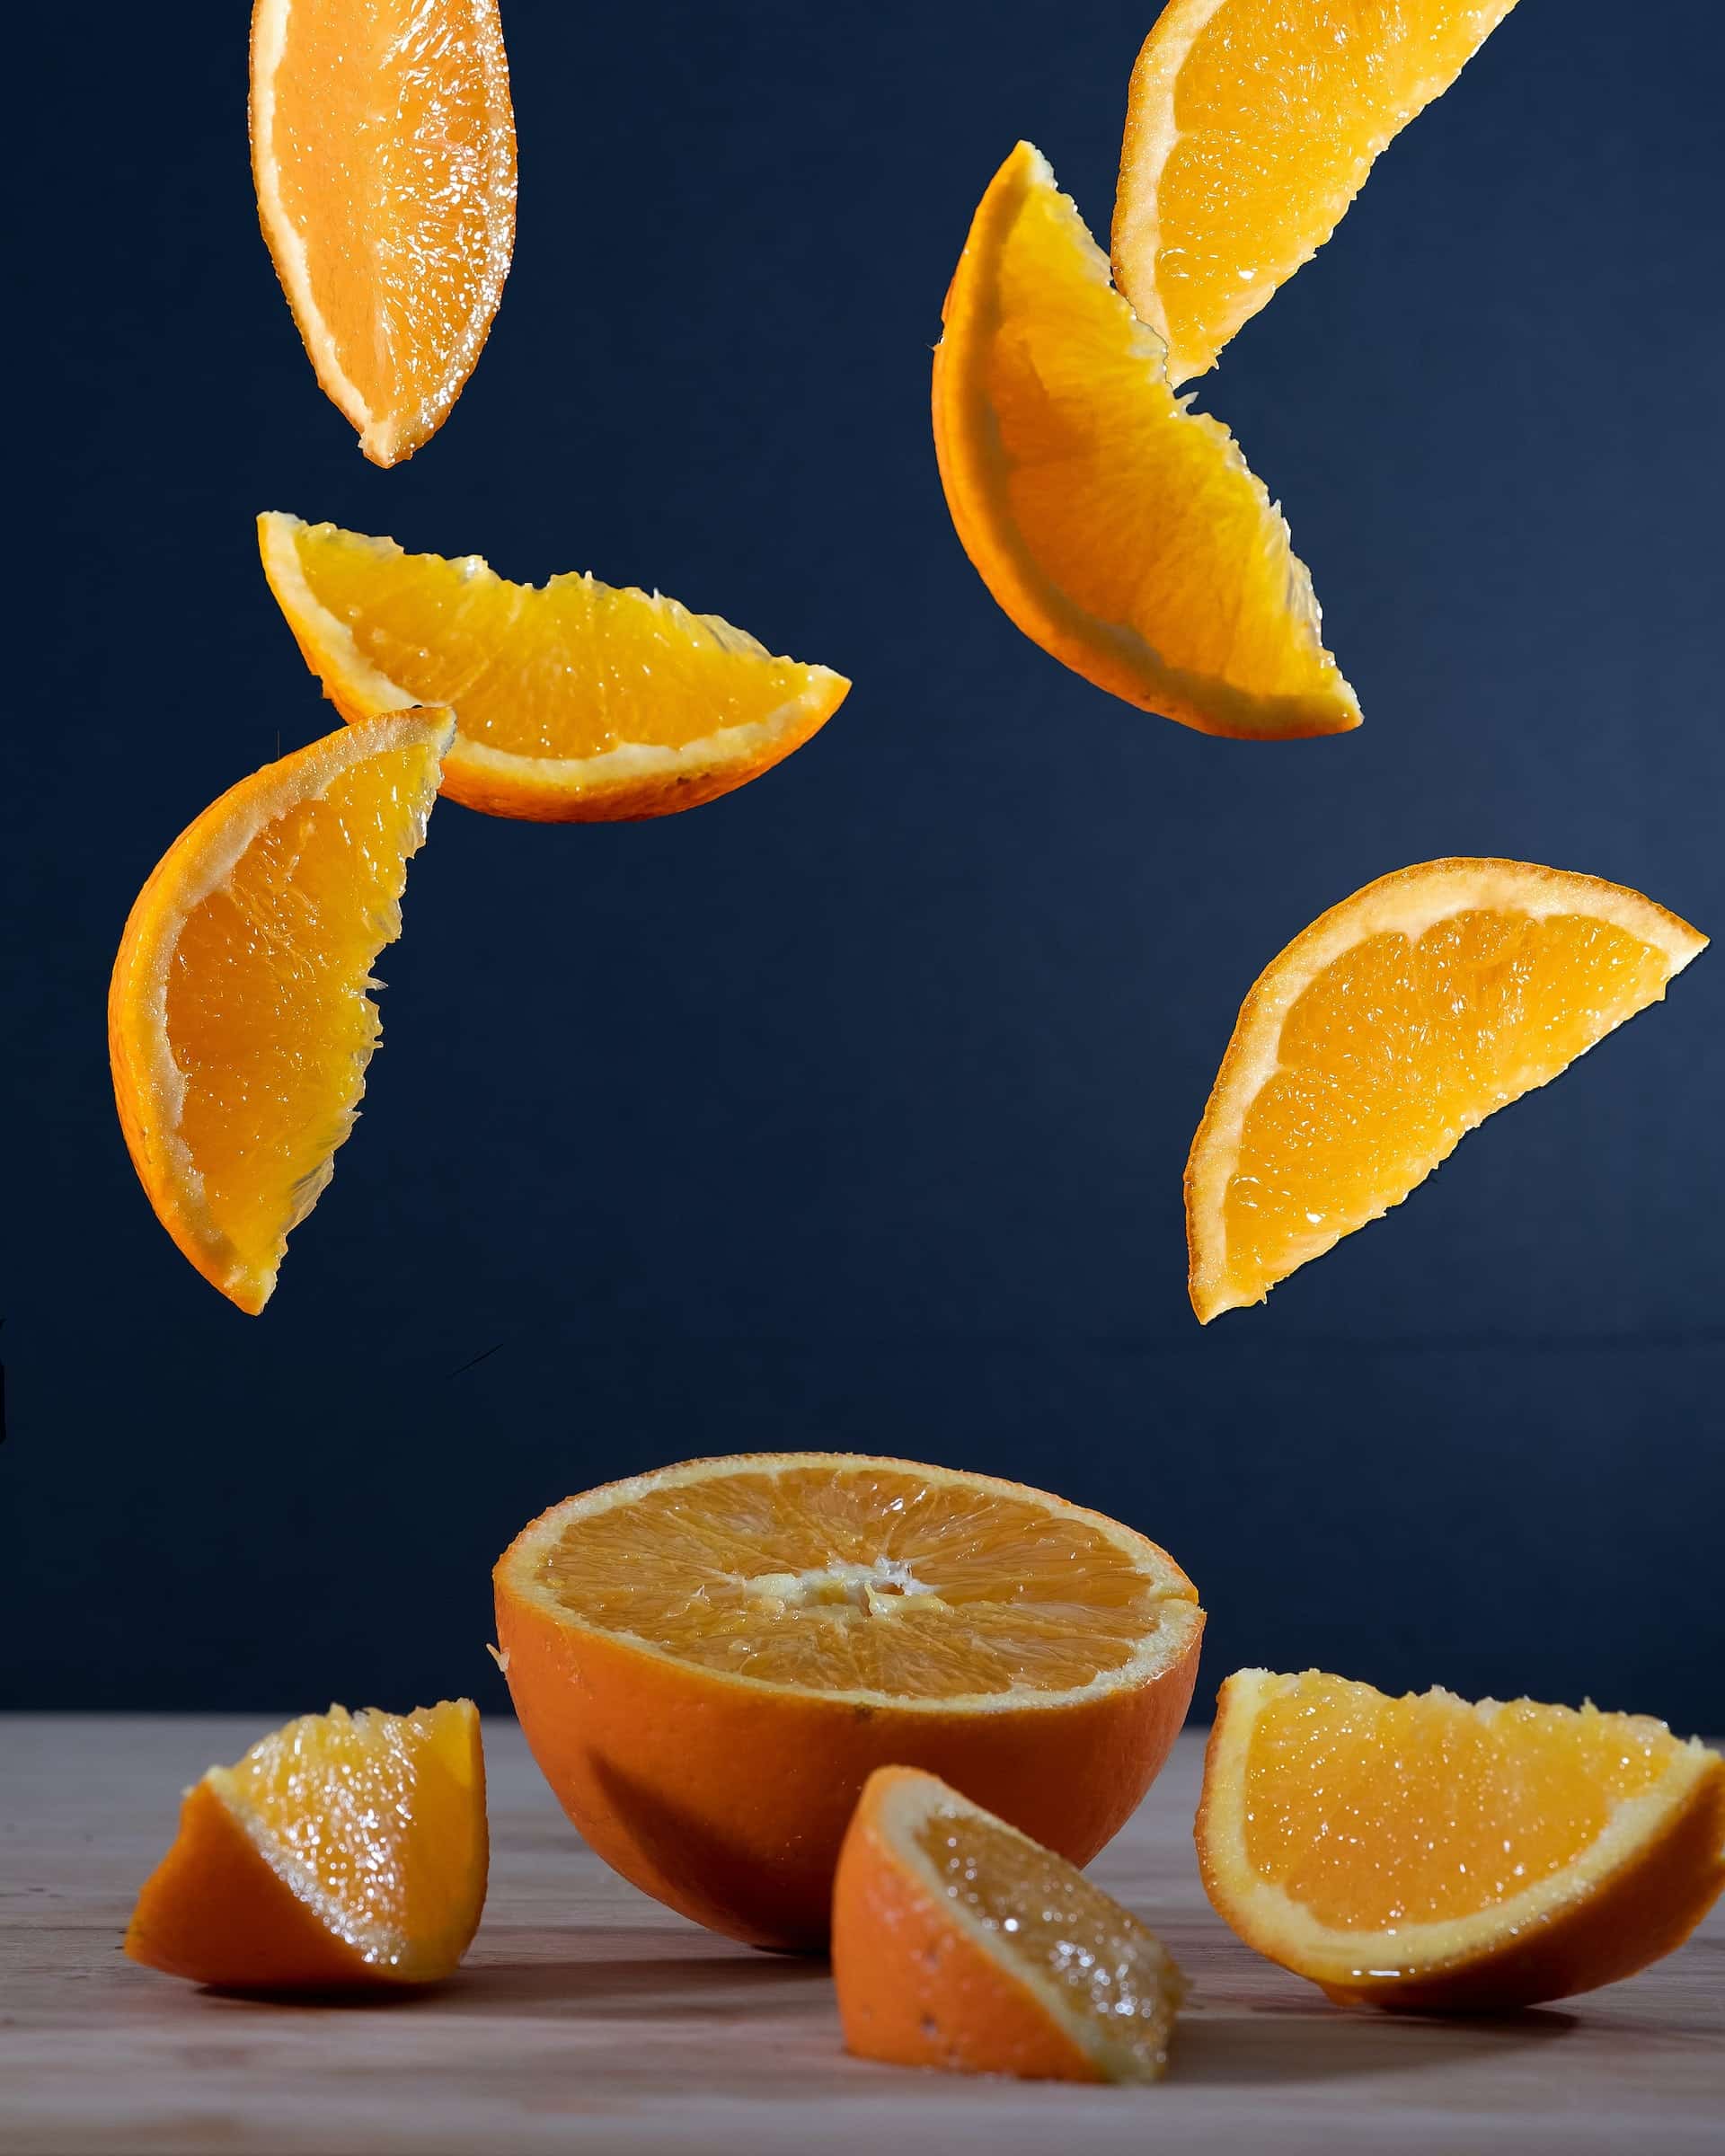 Ist Orangensaft gesund? Mögliche Vorteile